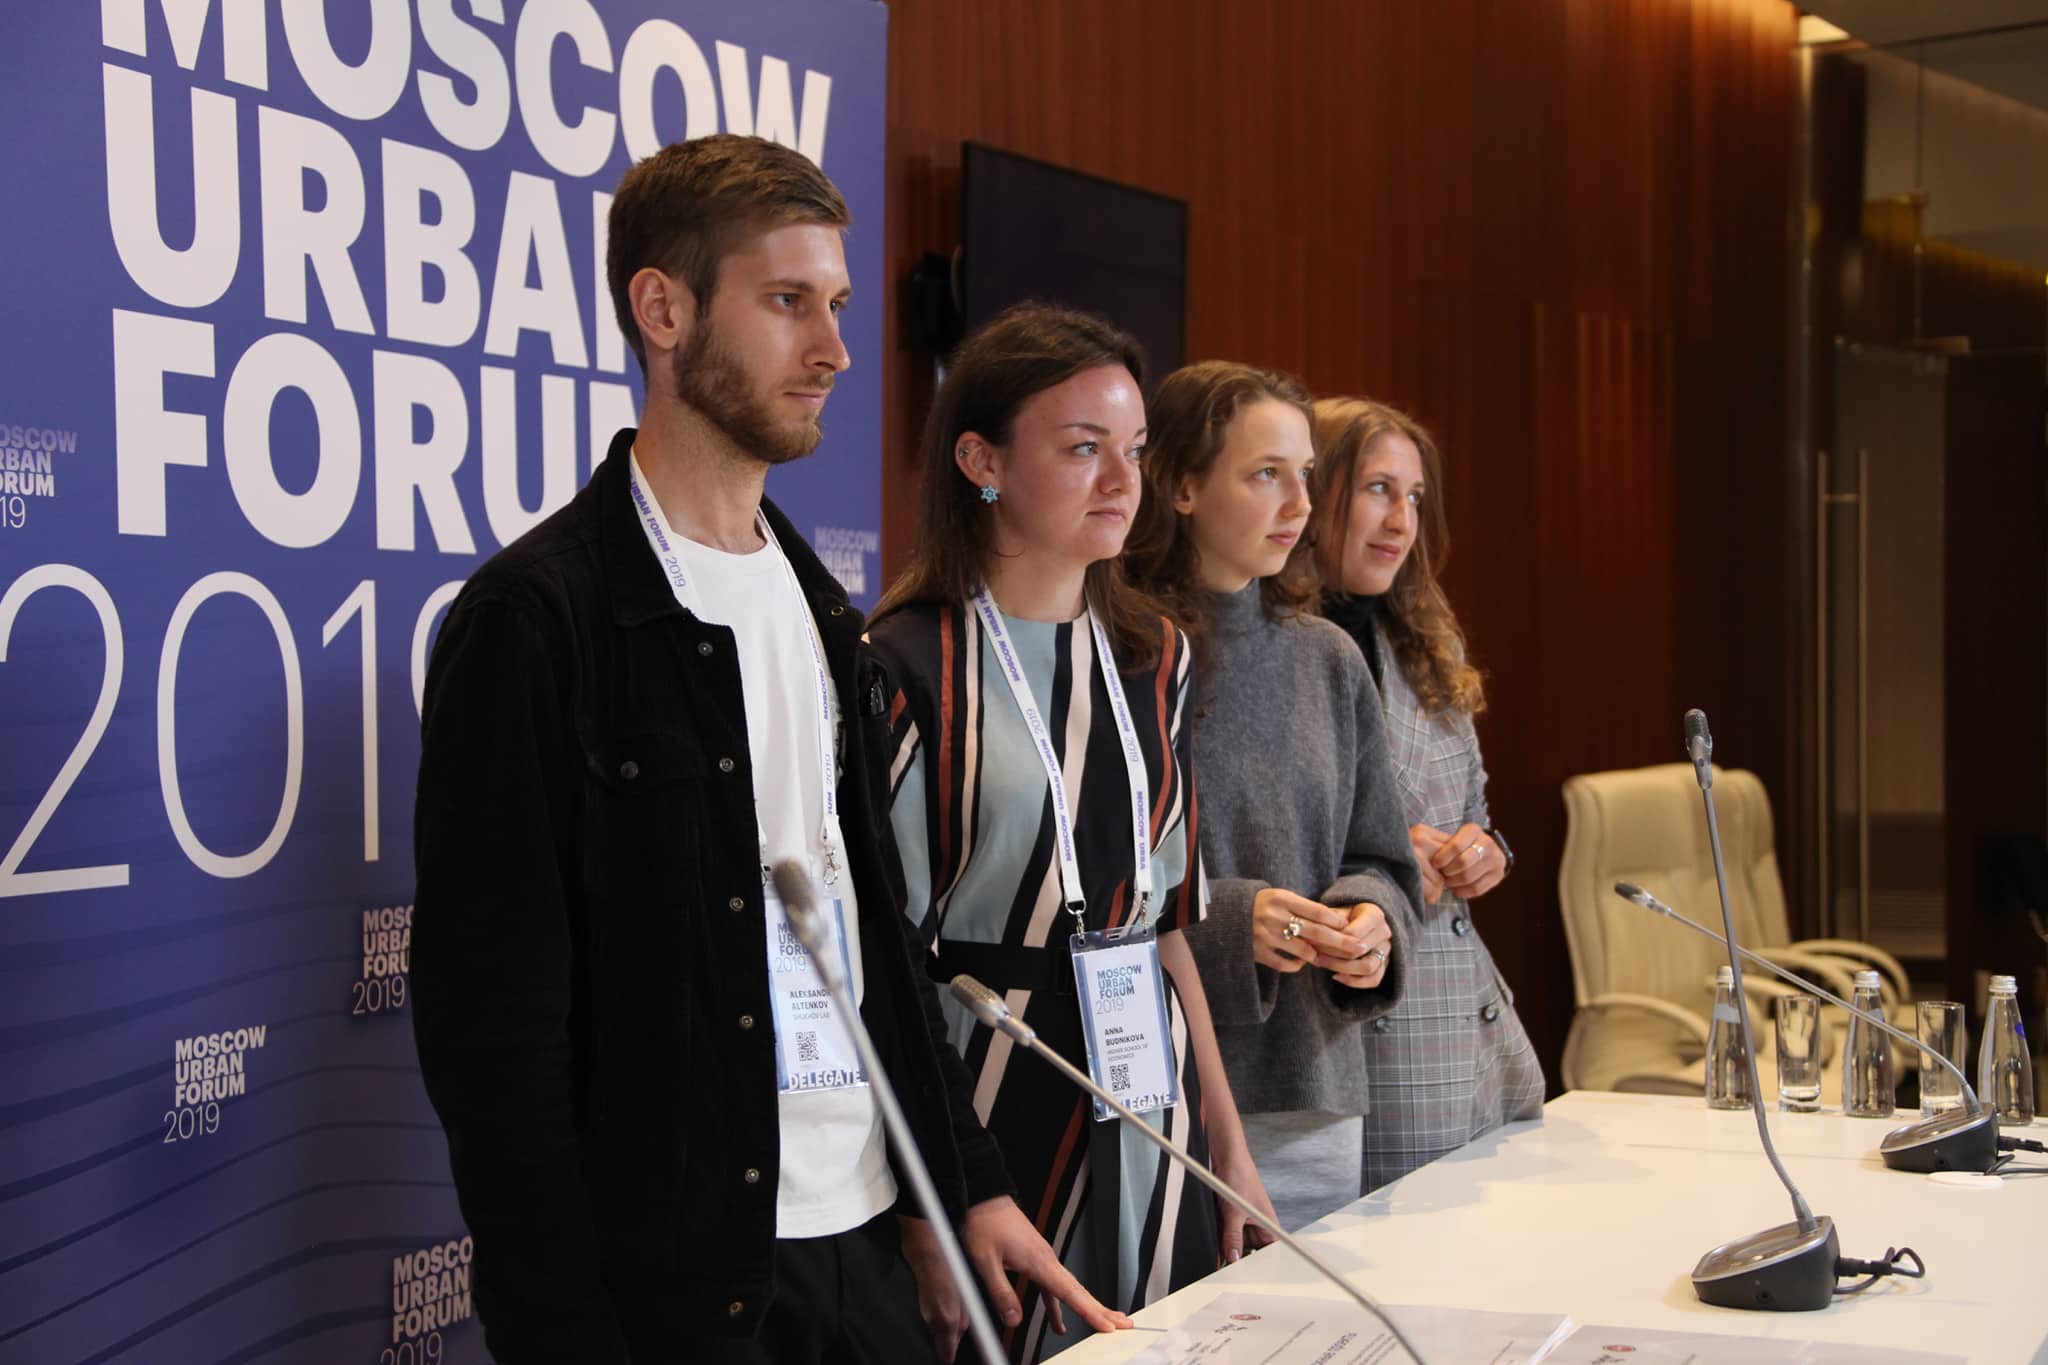 From left to right: Alexander Altenkov, Anna Budnikova, Valeriya Miftakhova, Daria Klimova